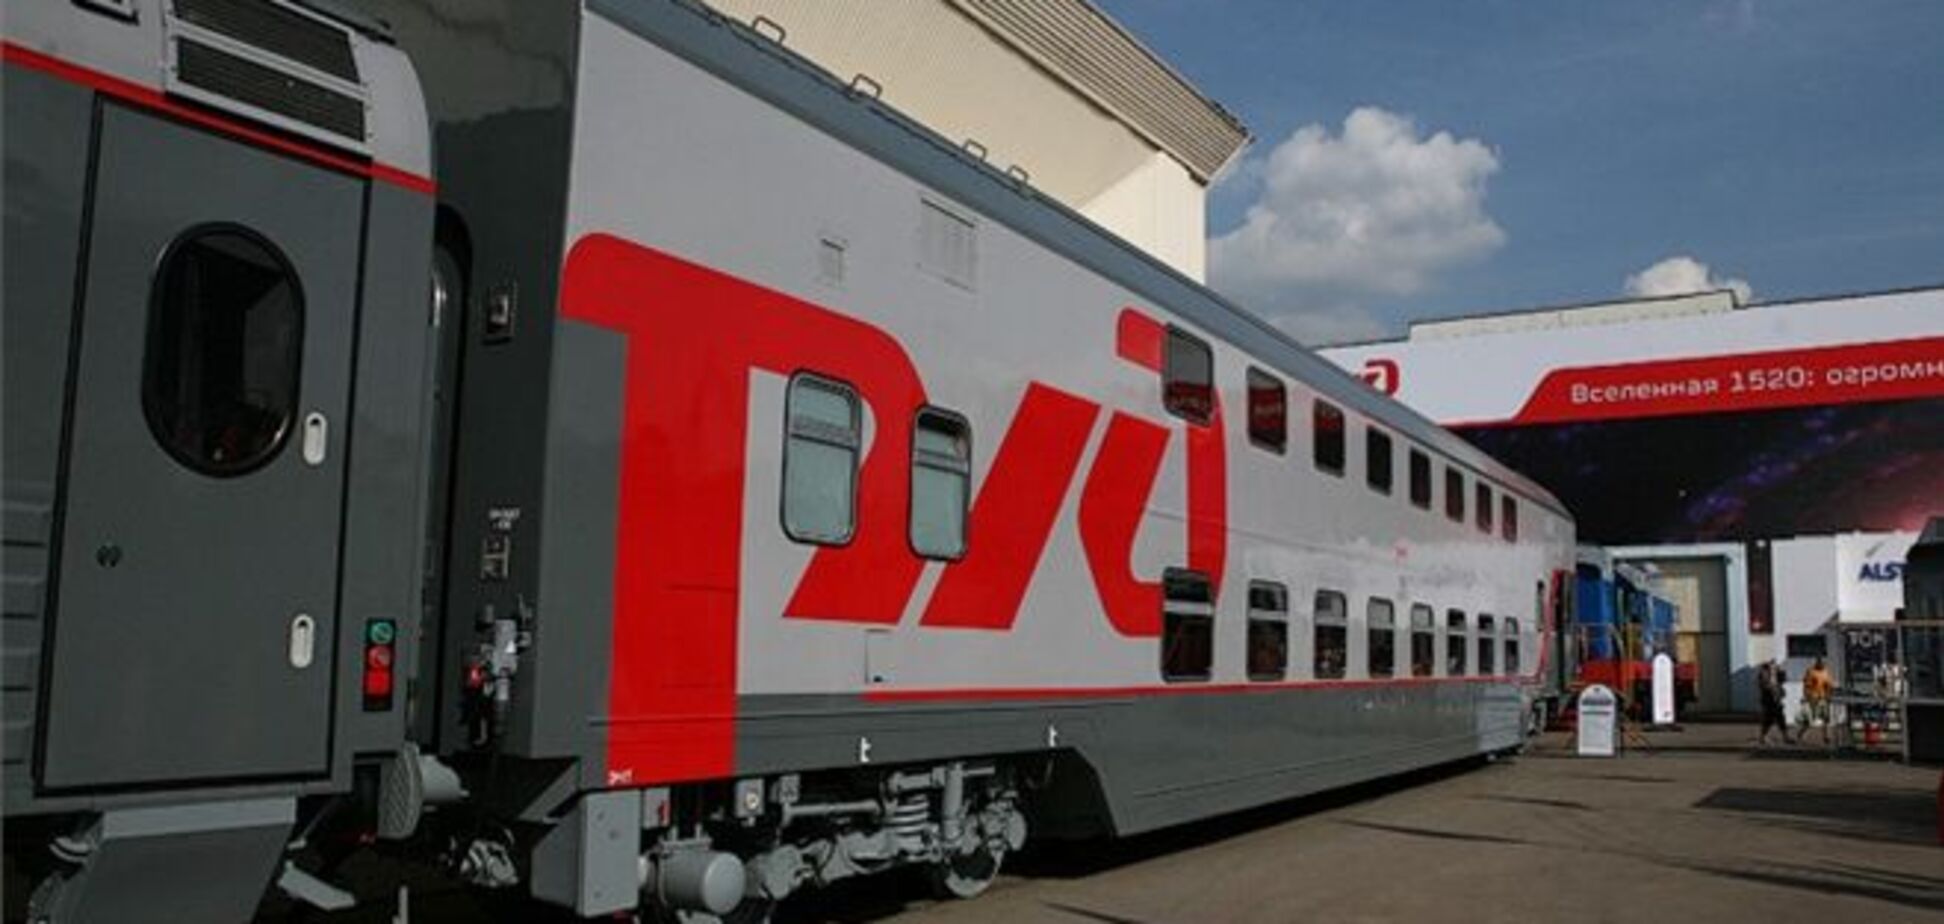 В России стартовала продажа билетов на двухэтажные поезда